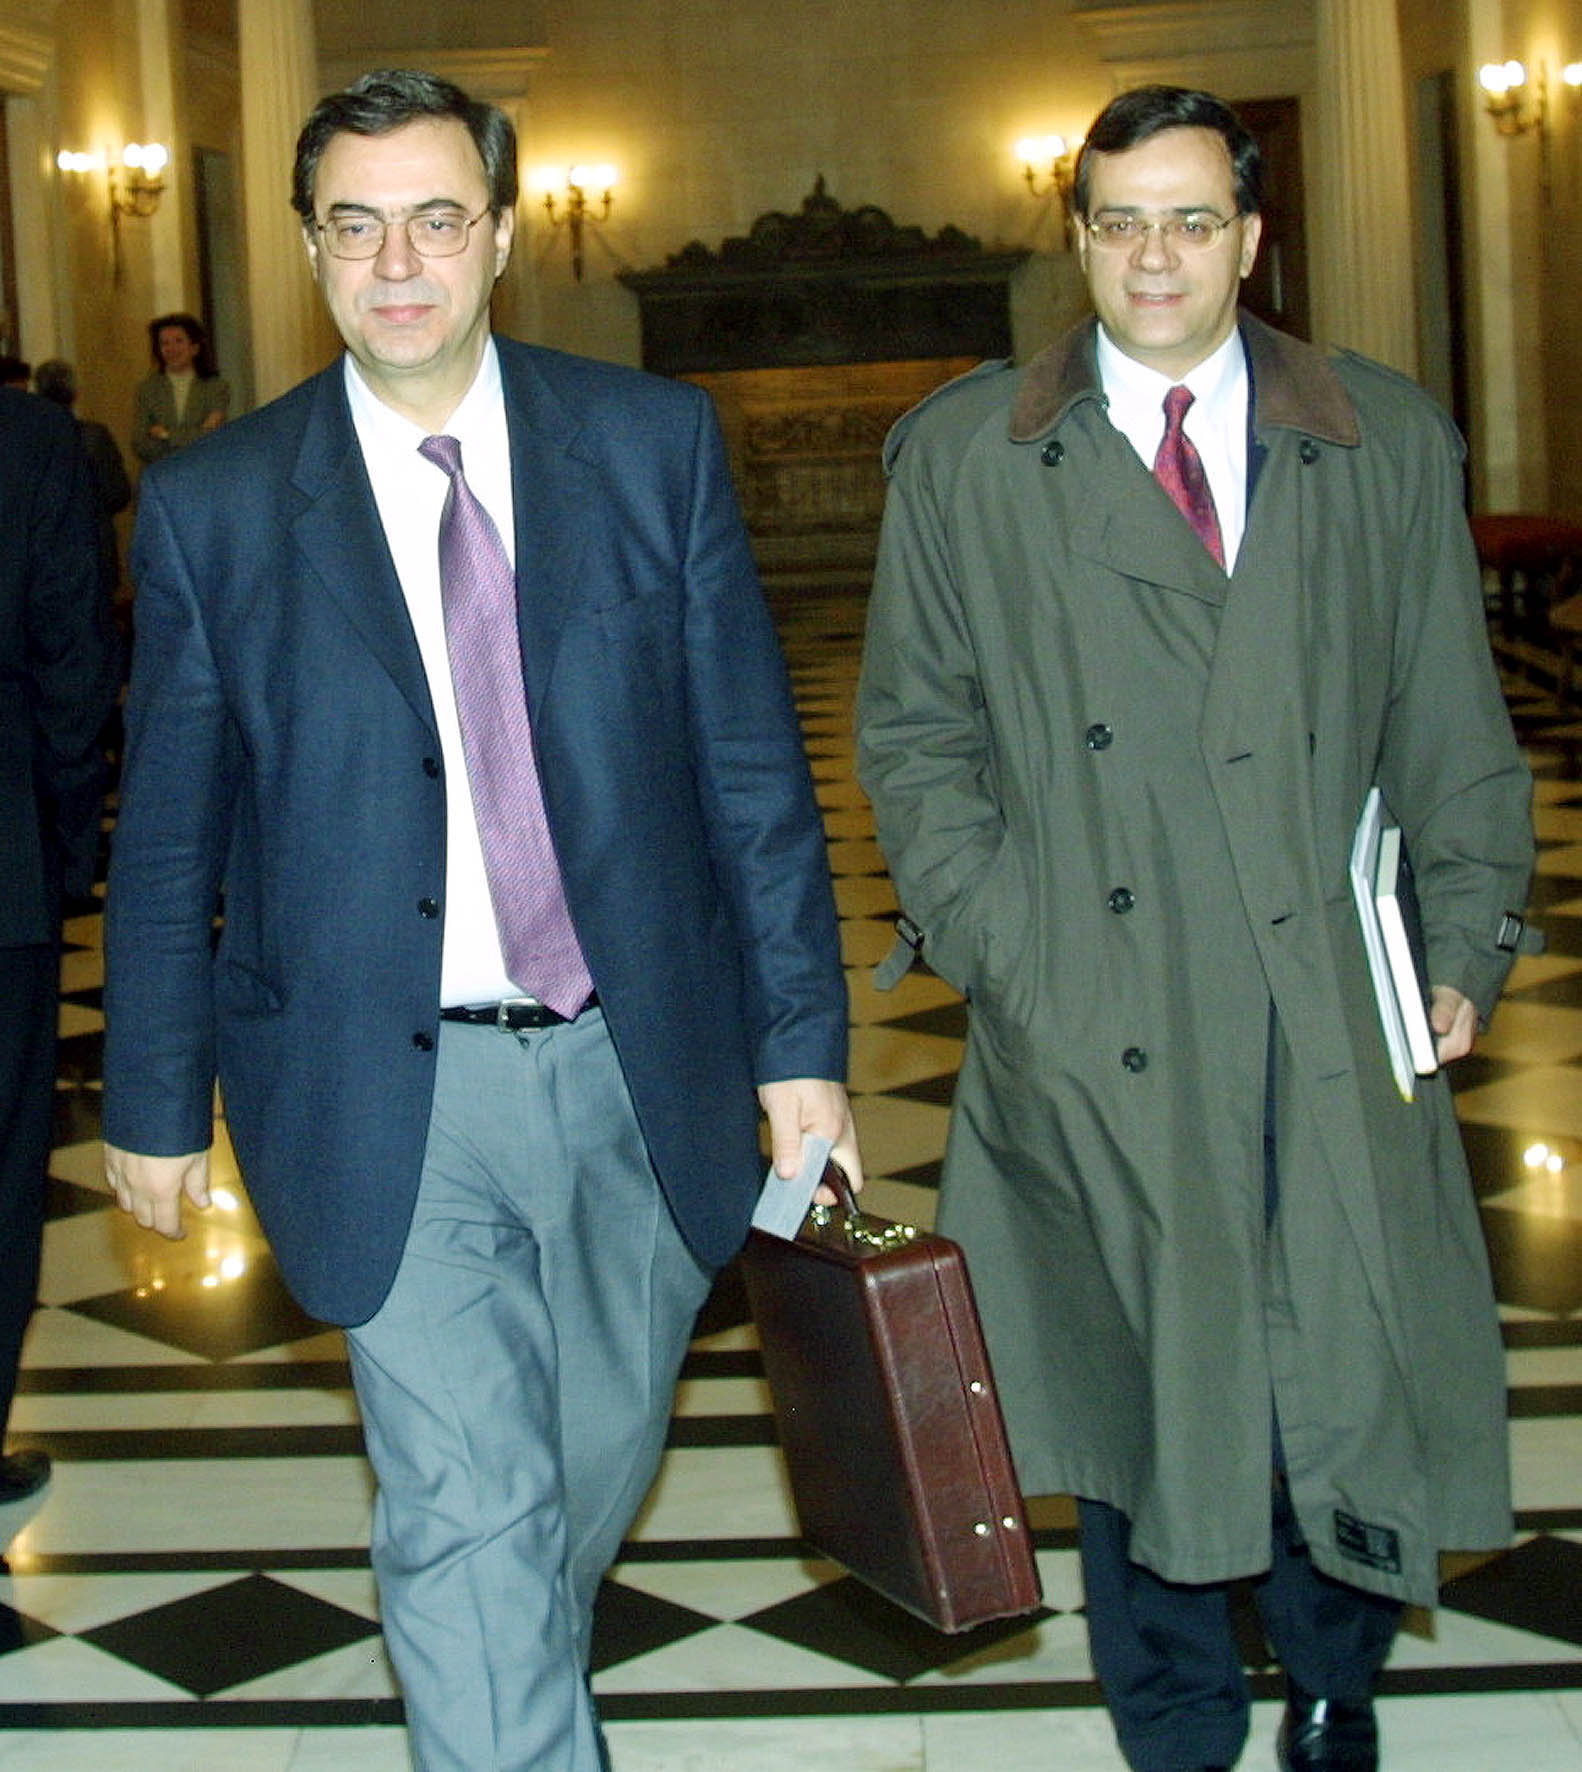 ΦΩΤΟ EUROKINISSI - Δίπλα στον πρώην υπουργό Οικονομικών, Νίκο Χριστοδουλάκη το 2003